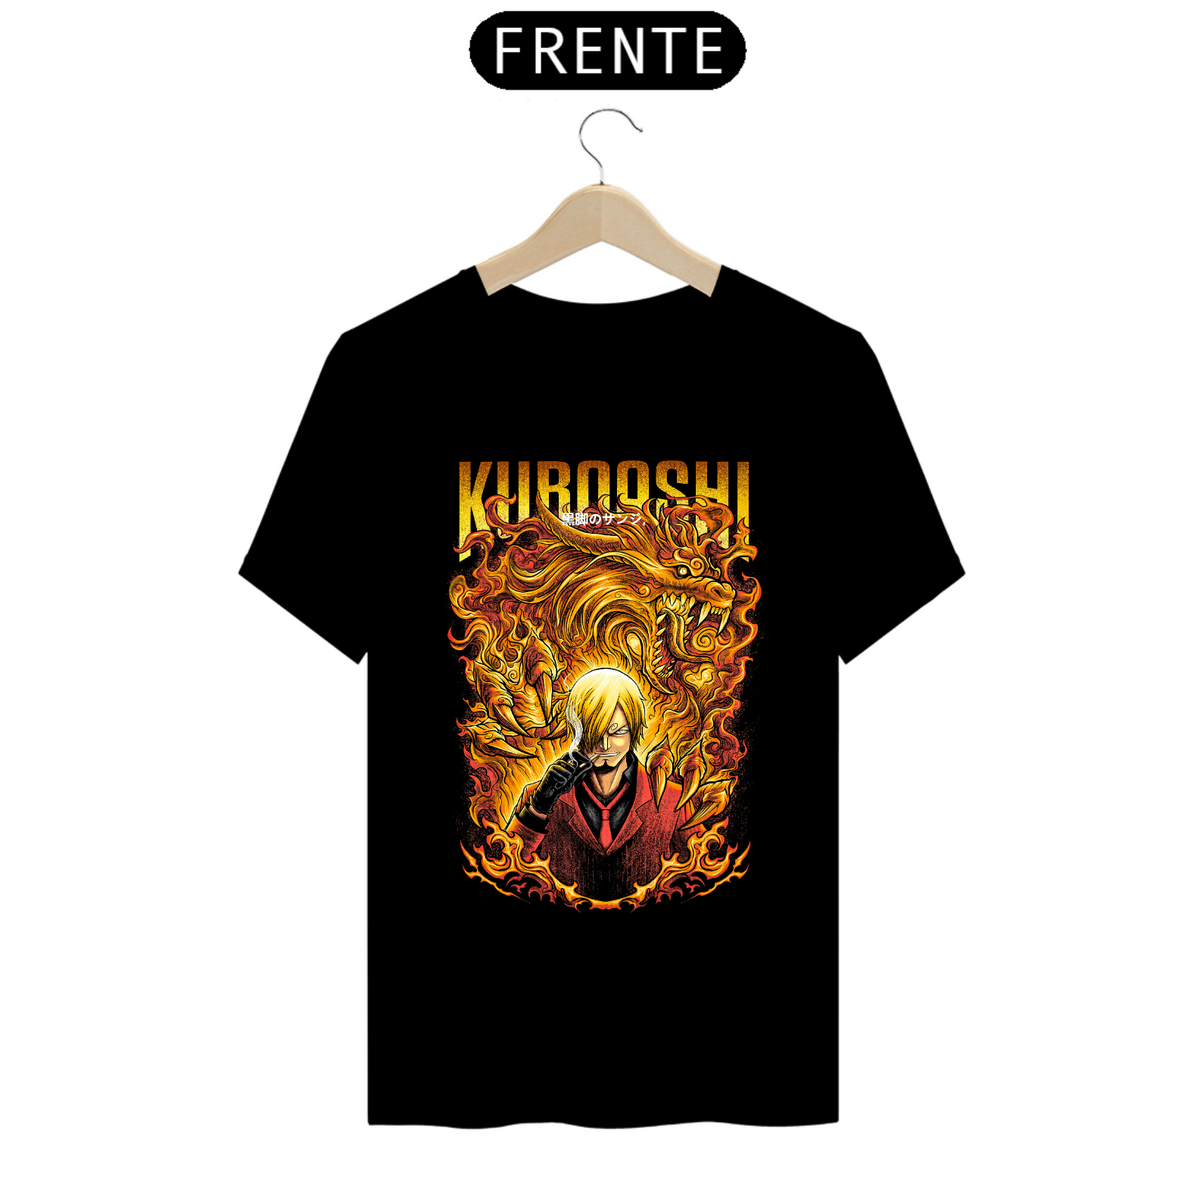 Nome do produto: T-shirt Premium - Sanji  Kuroashi 